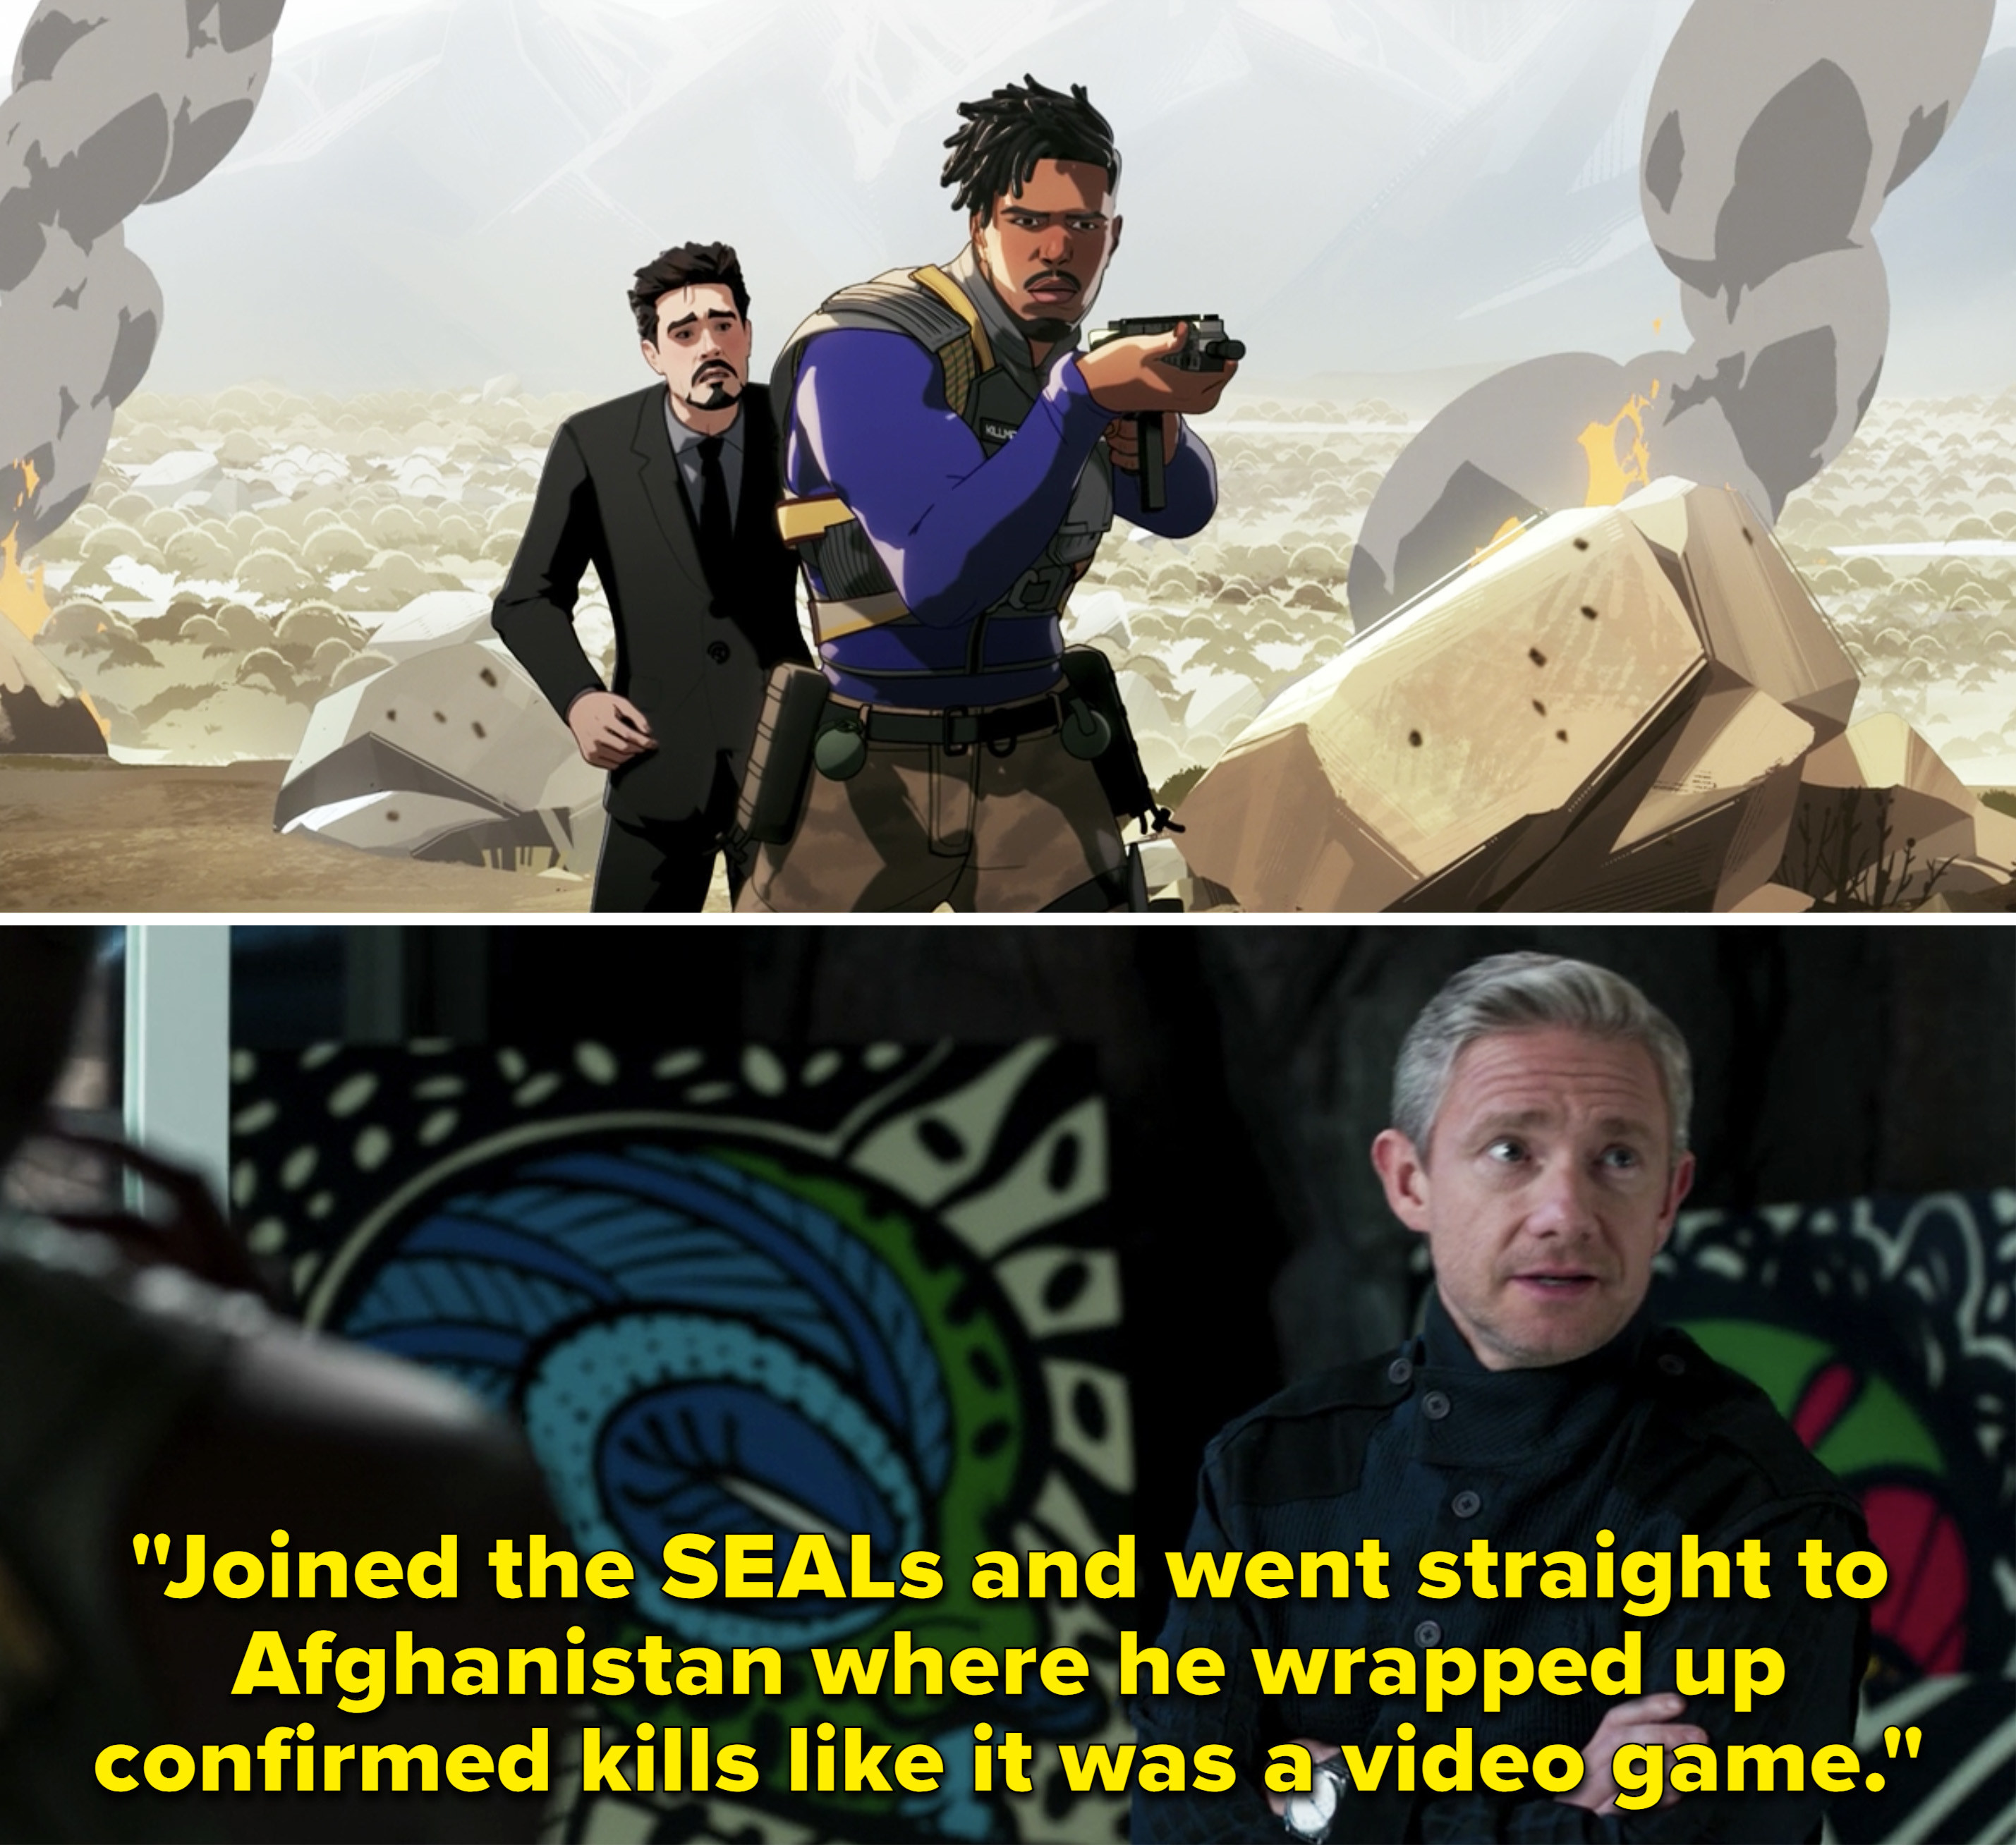 罗斯说,“加入了海豹和直接去阿富汗,他结束了证实死亡就像一个视频game"